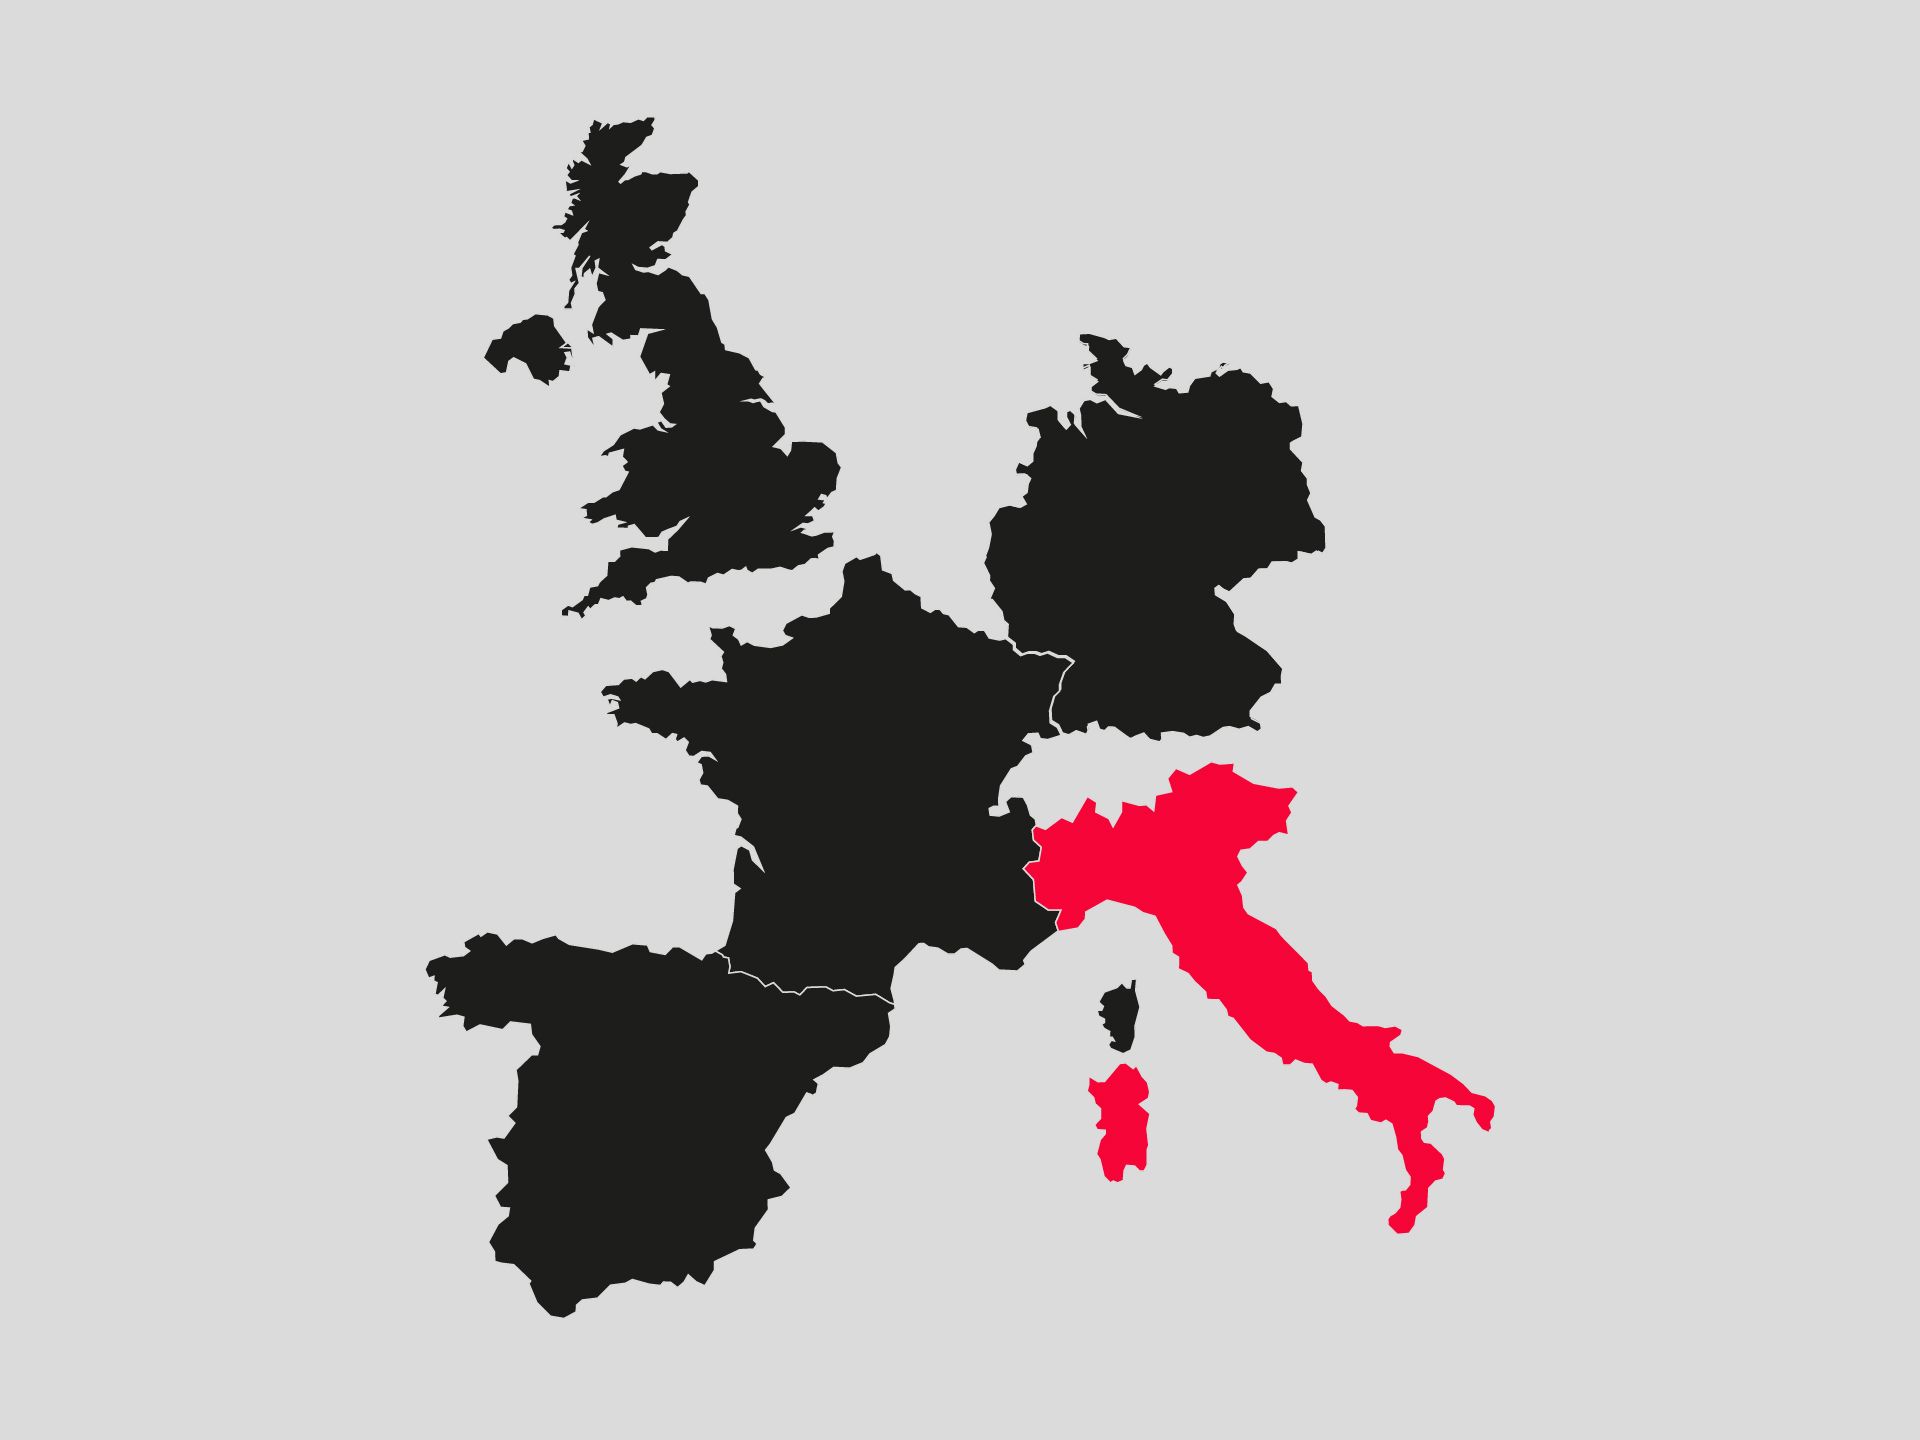 Das Schaubild zeigt Europa, Italien ist farblich hervorgehoben.